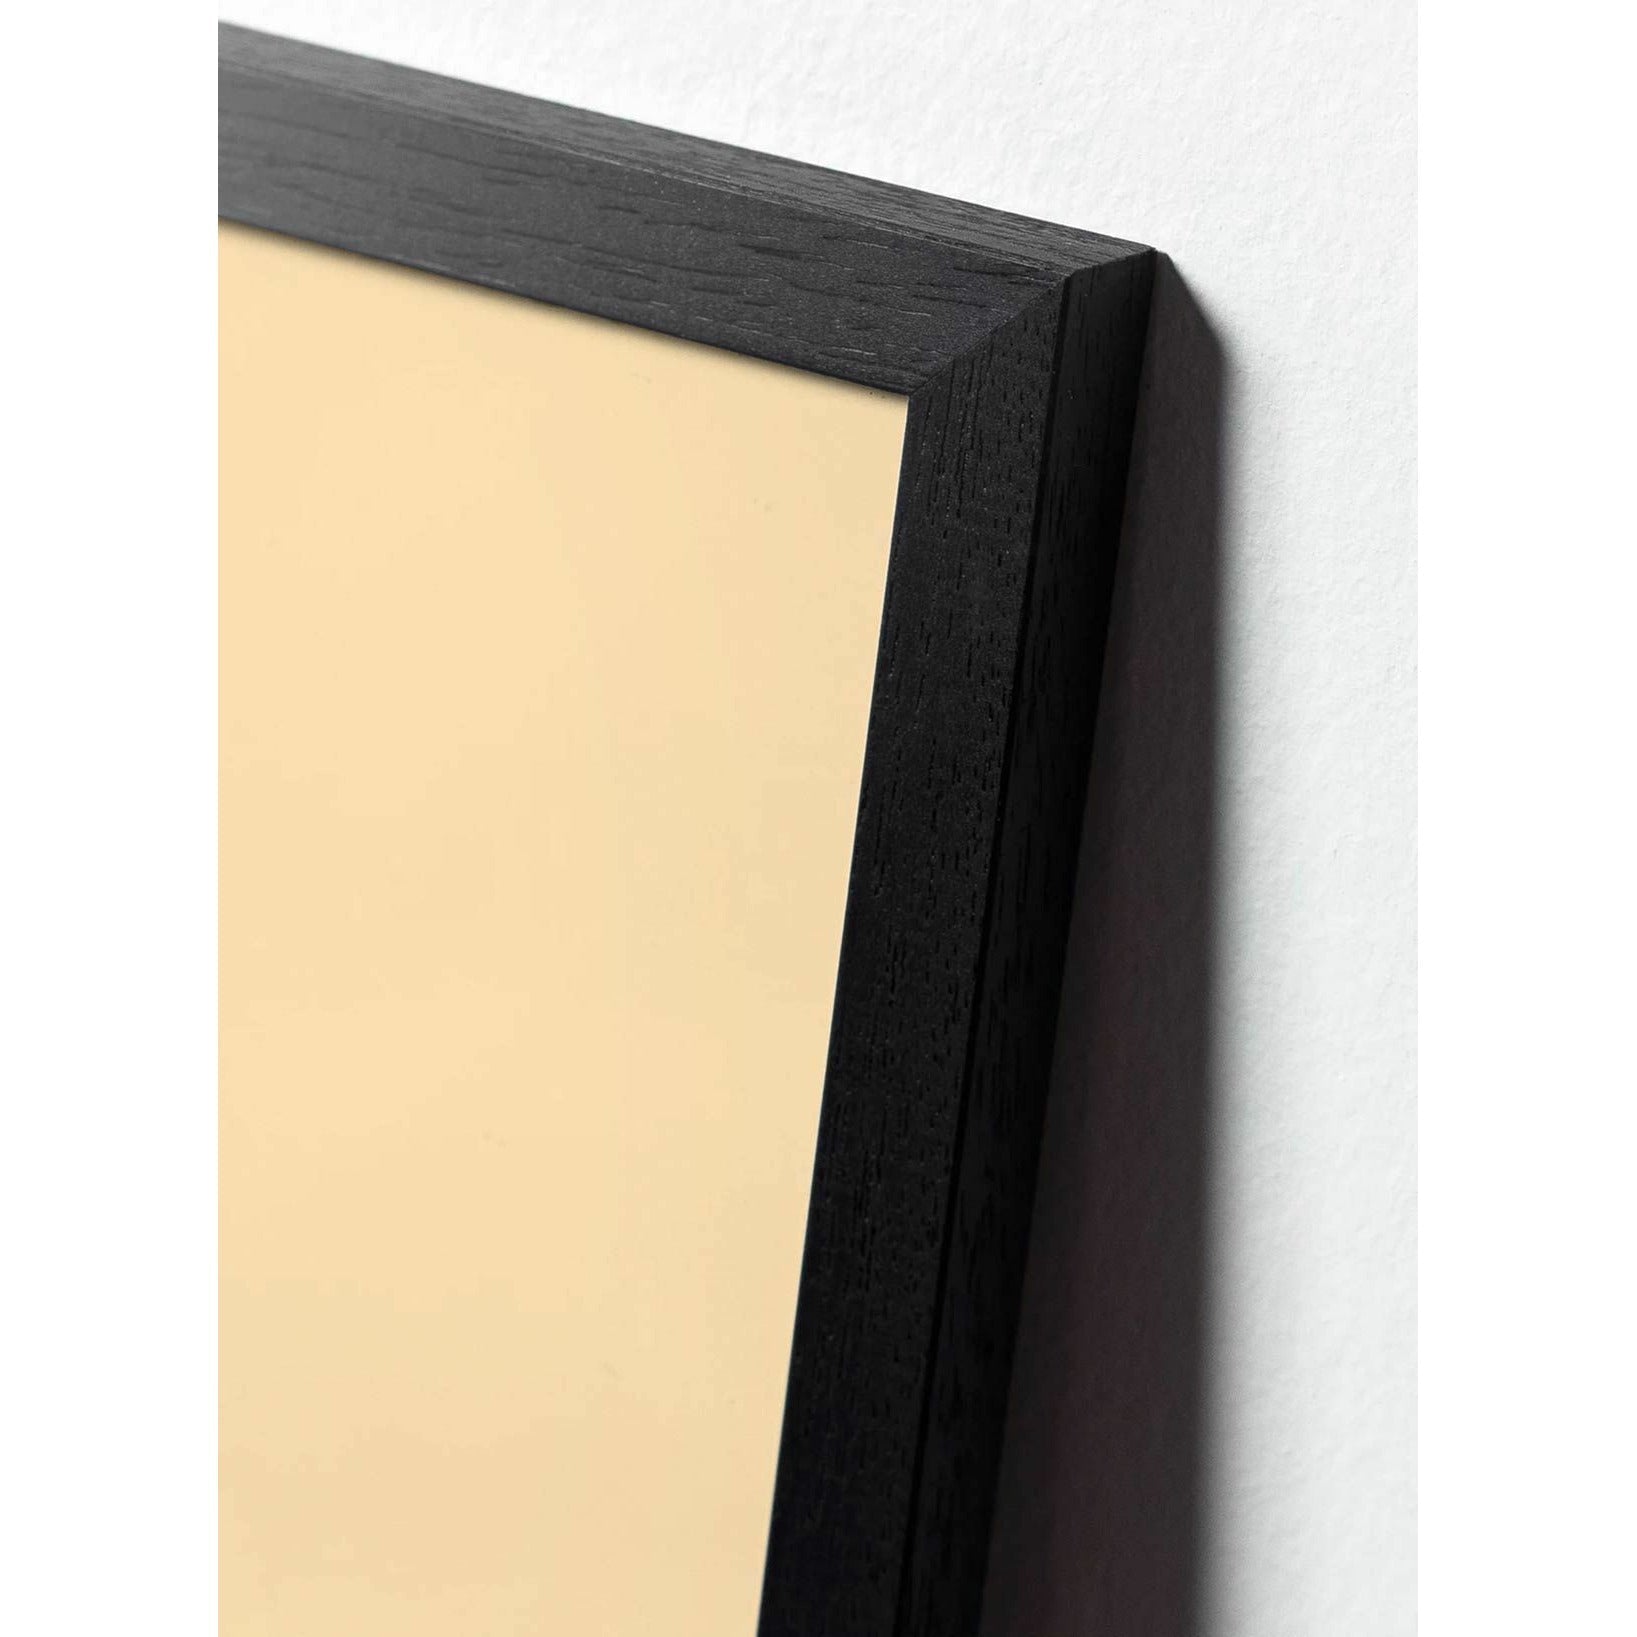 Póster clásico de cono de pino de creación, marco en madera lacada negra A5, fondo blanco